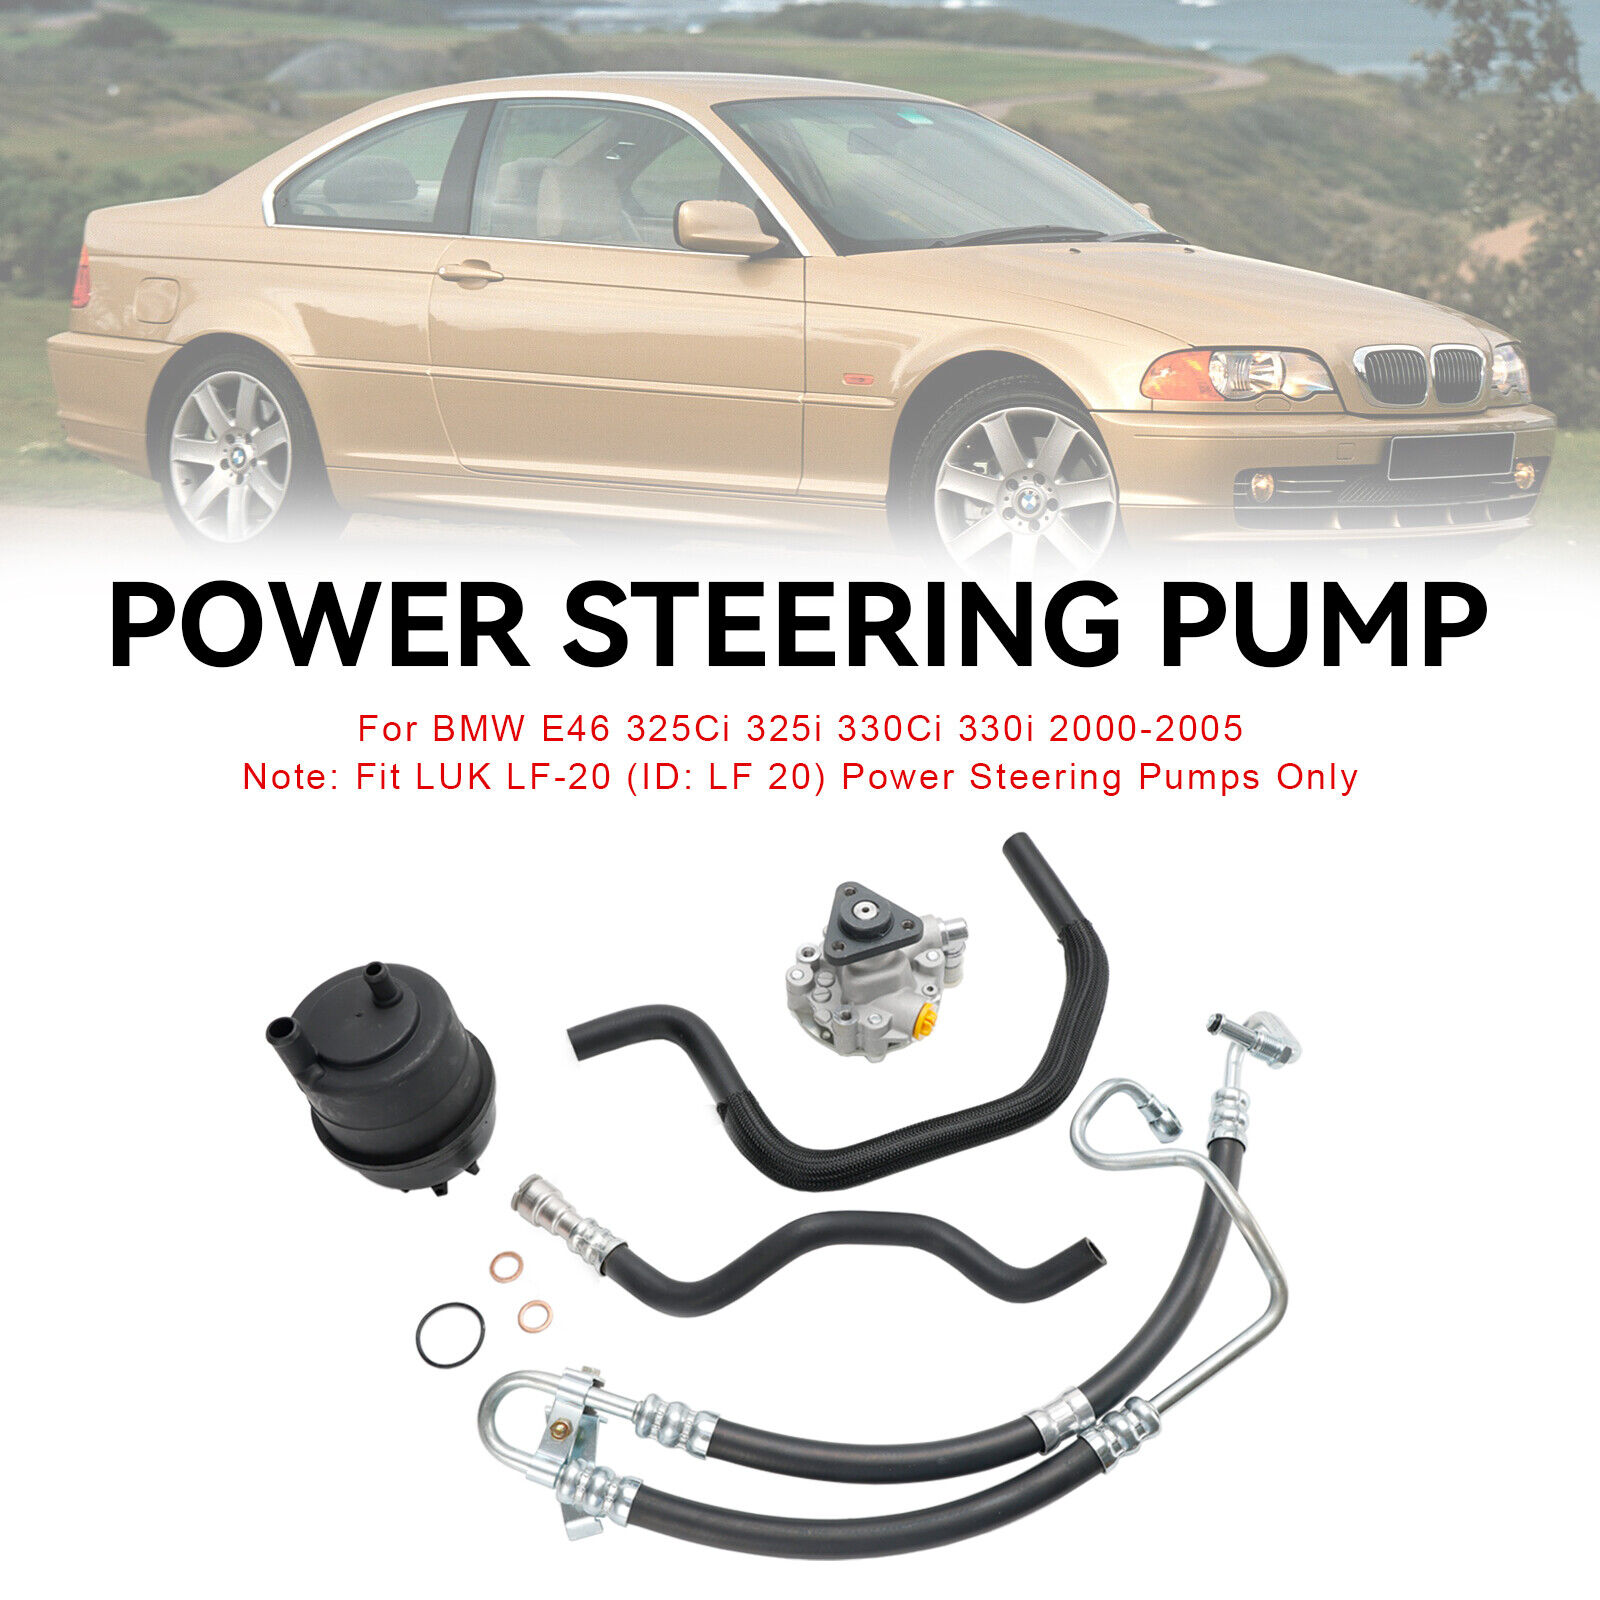 Power Steering Pump Kit Fit BMW E46 320i 323i 325i 328Ci 328i 330i 2001-2005